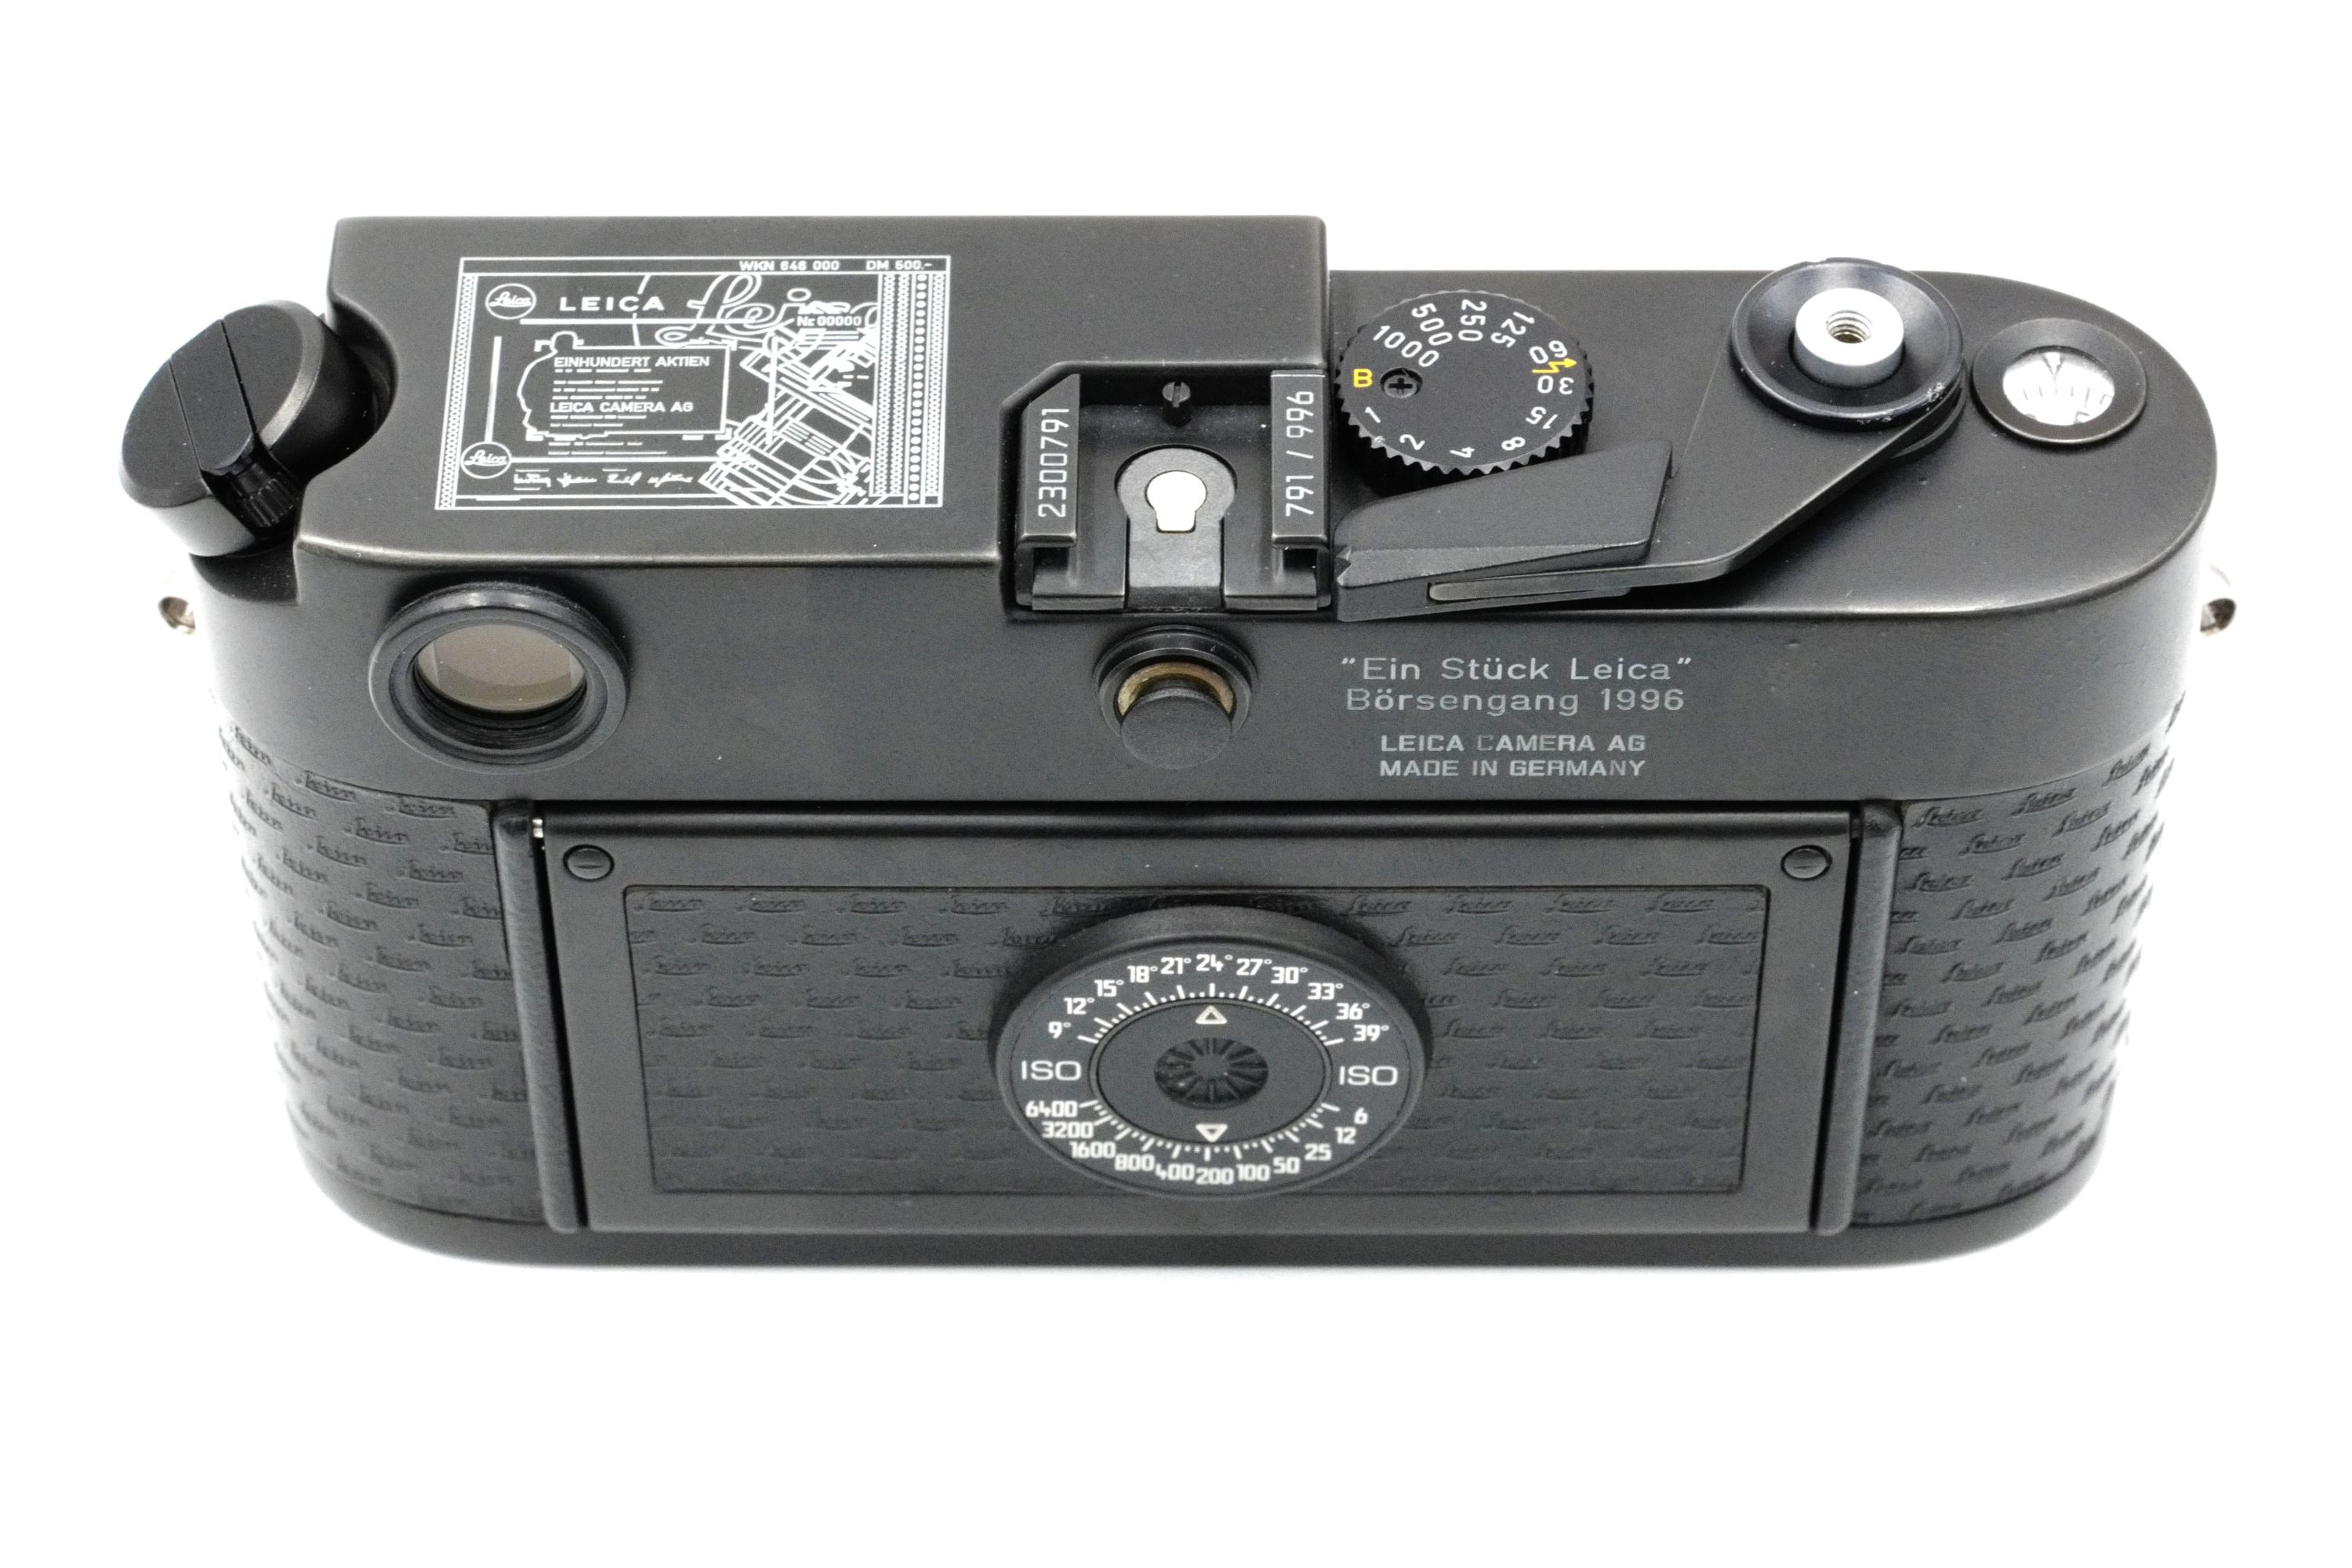 Leica M6 "Ein Stück Leica" Special Edition 